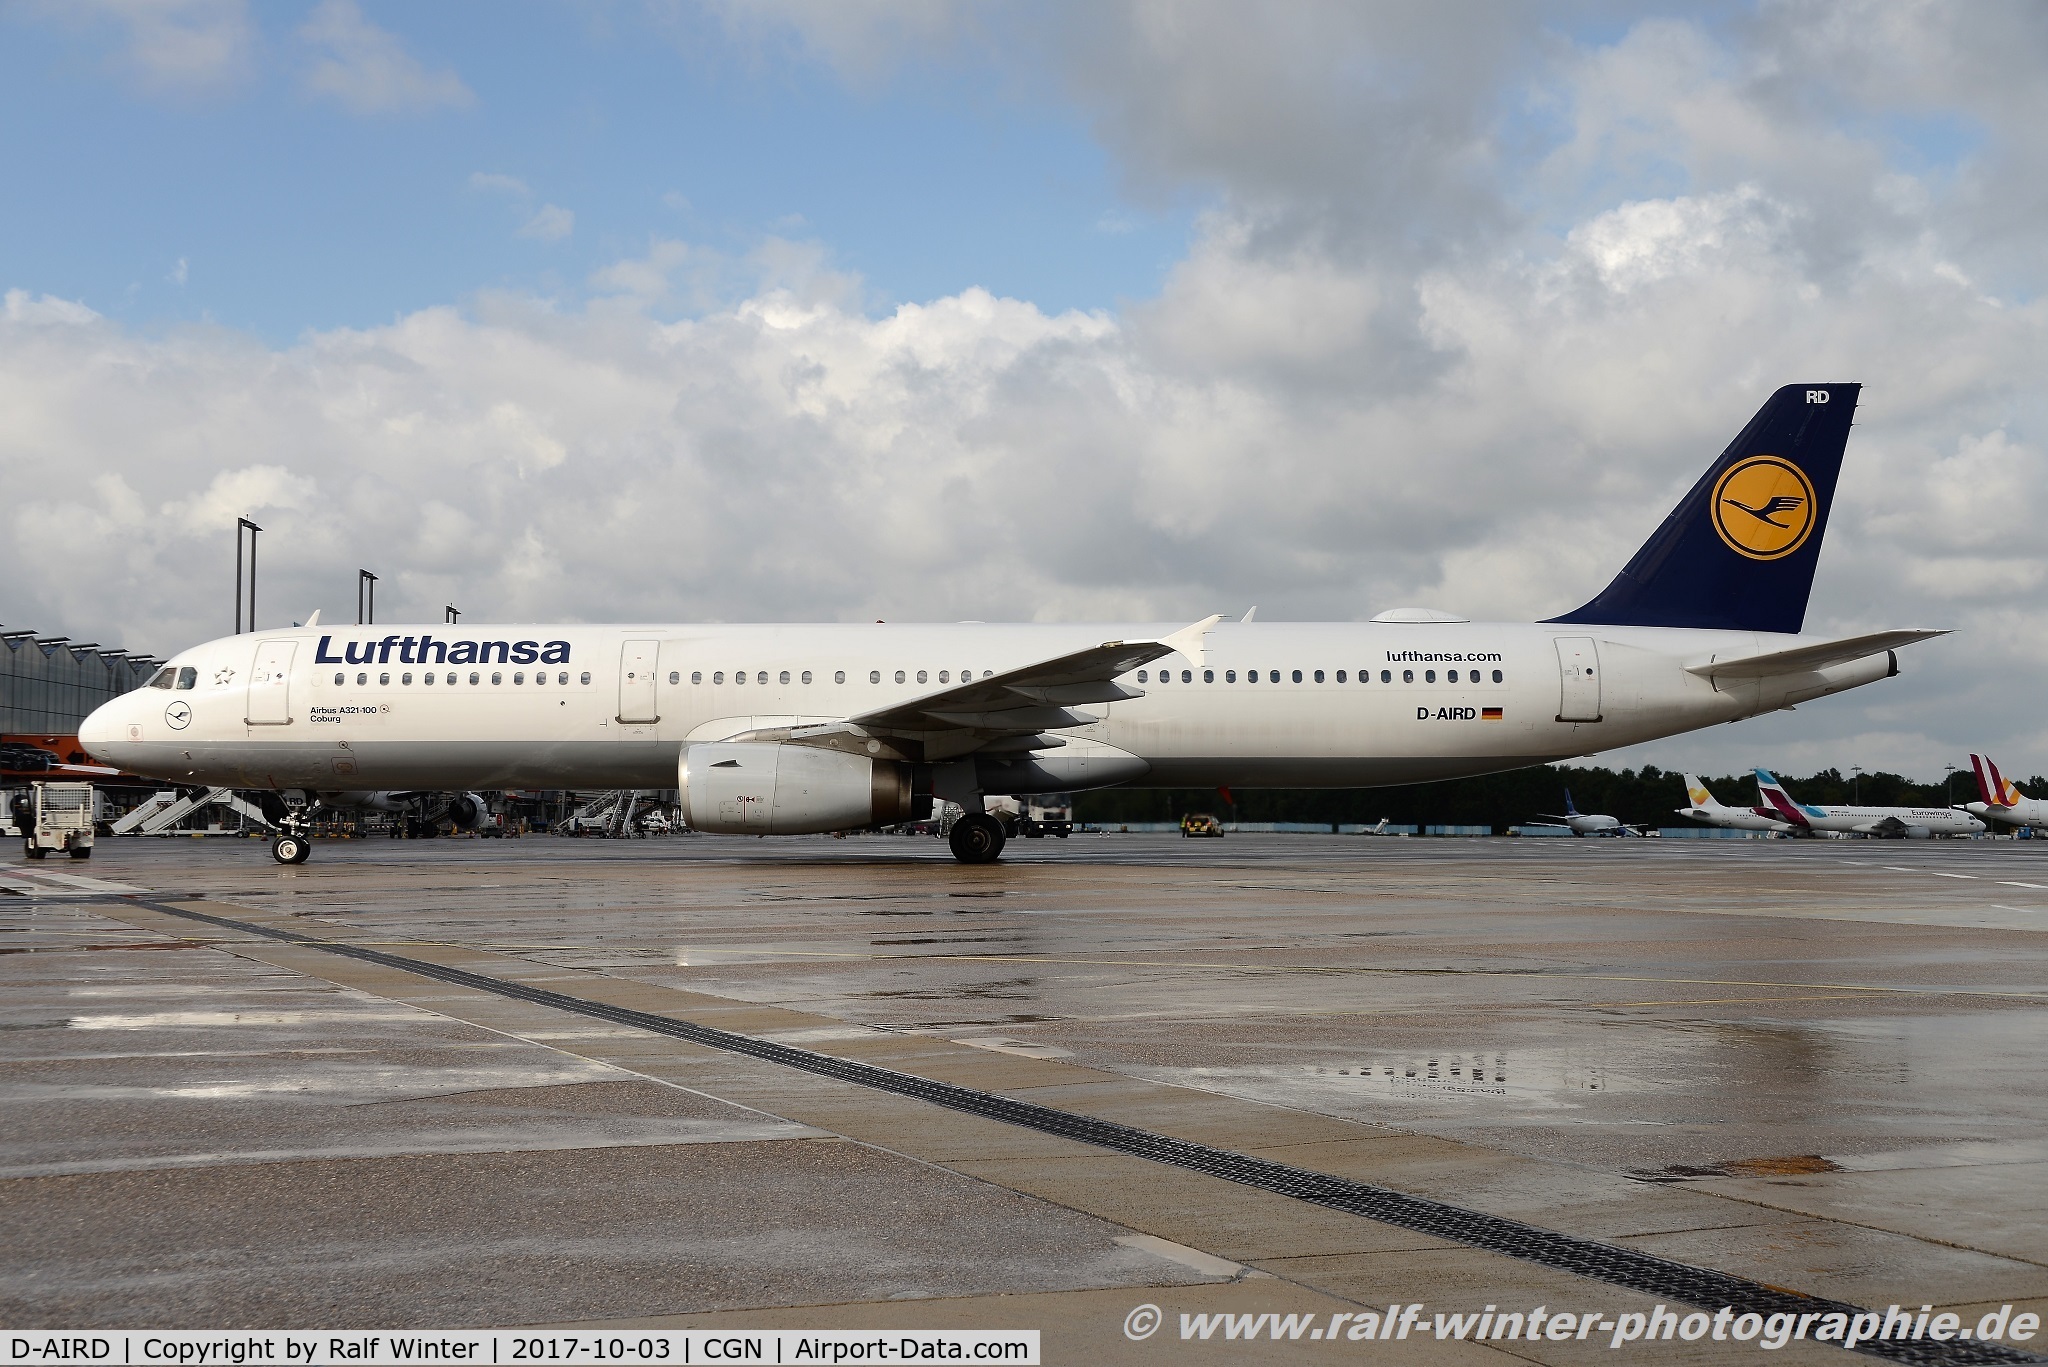 D-AIRD, 1994 Airbus A321-131 C/N 0474, Airbus A321-131 - LH DLH Lufthansa 'Coburg' - 474 - D-AIRD - 03.10.2017 - CGN